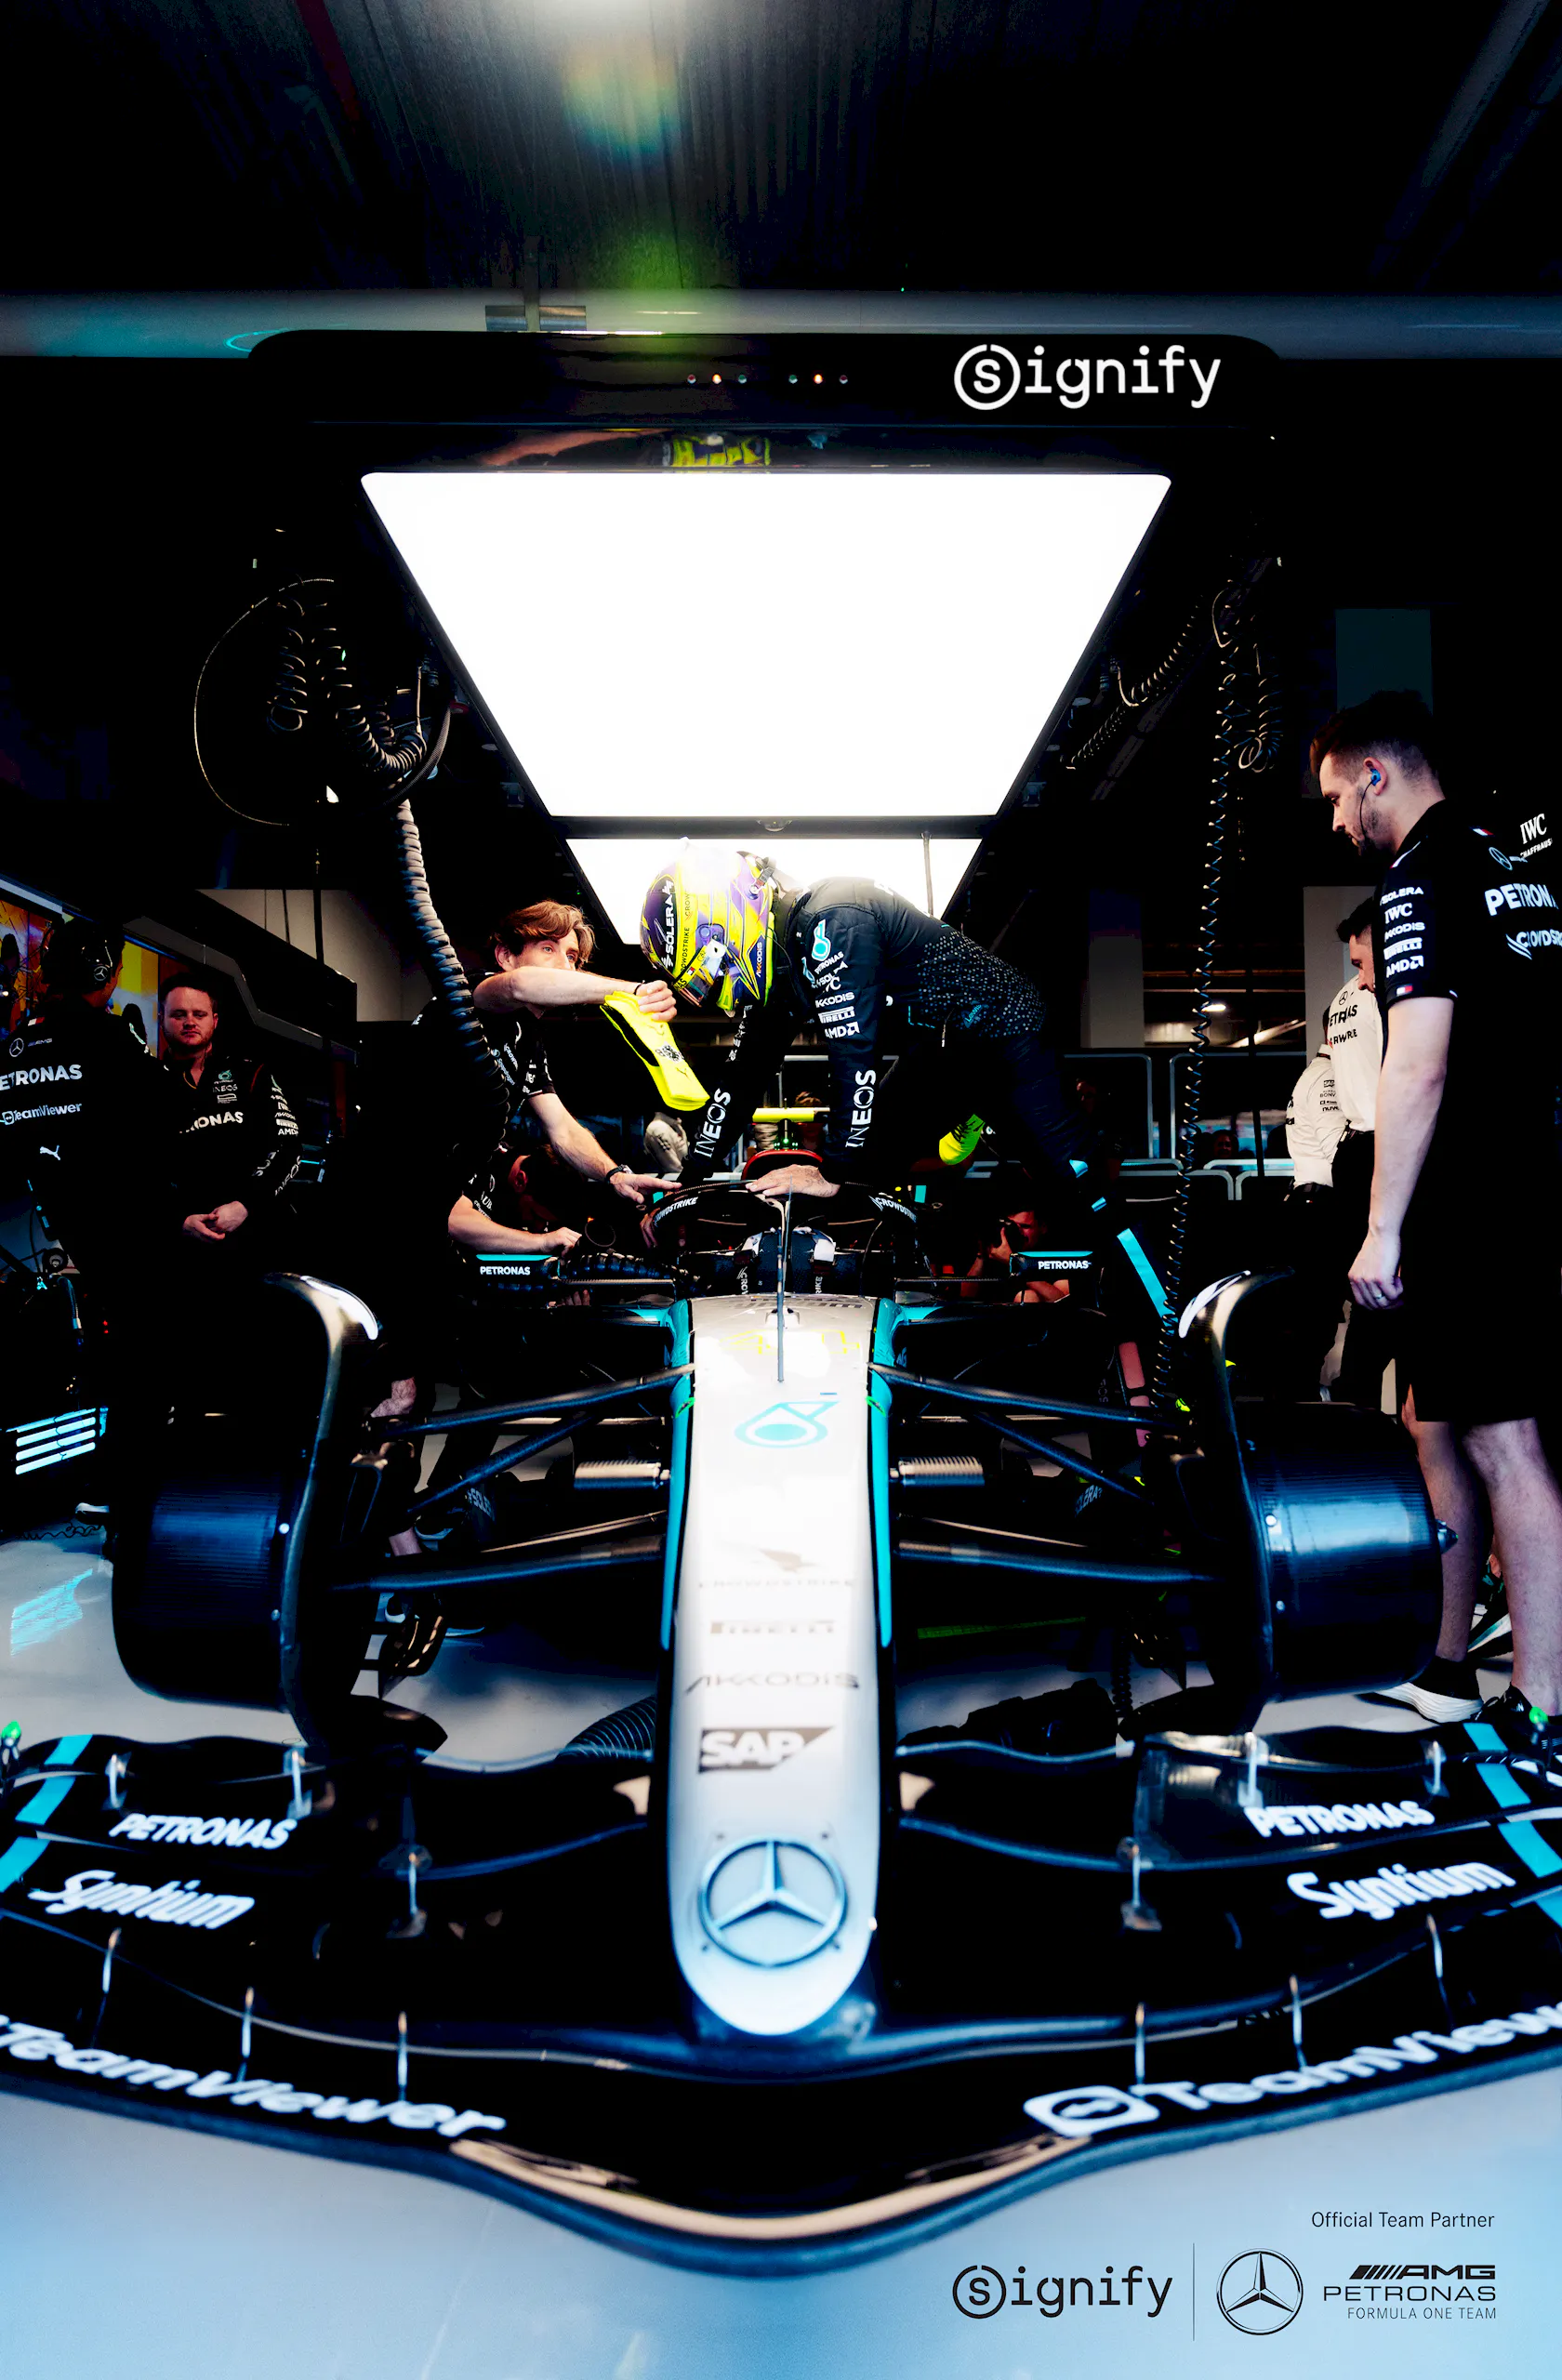 Signify và Mercedes-AMG PETRONAS F1: Hợp tác chiến lược thúc đẩy sự sáng tạo và bền vững